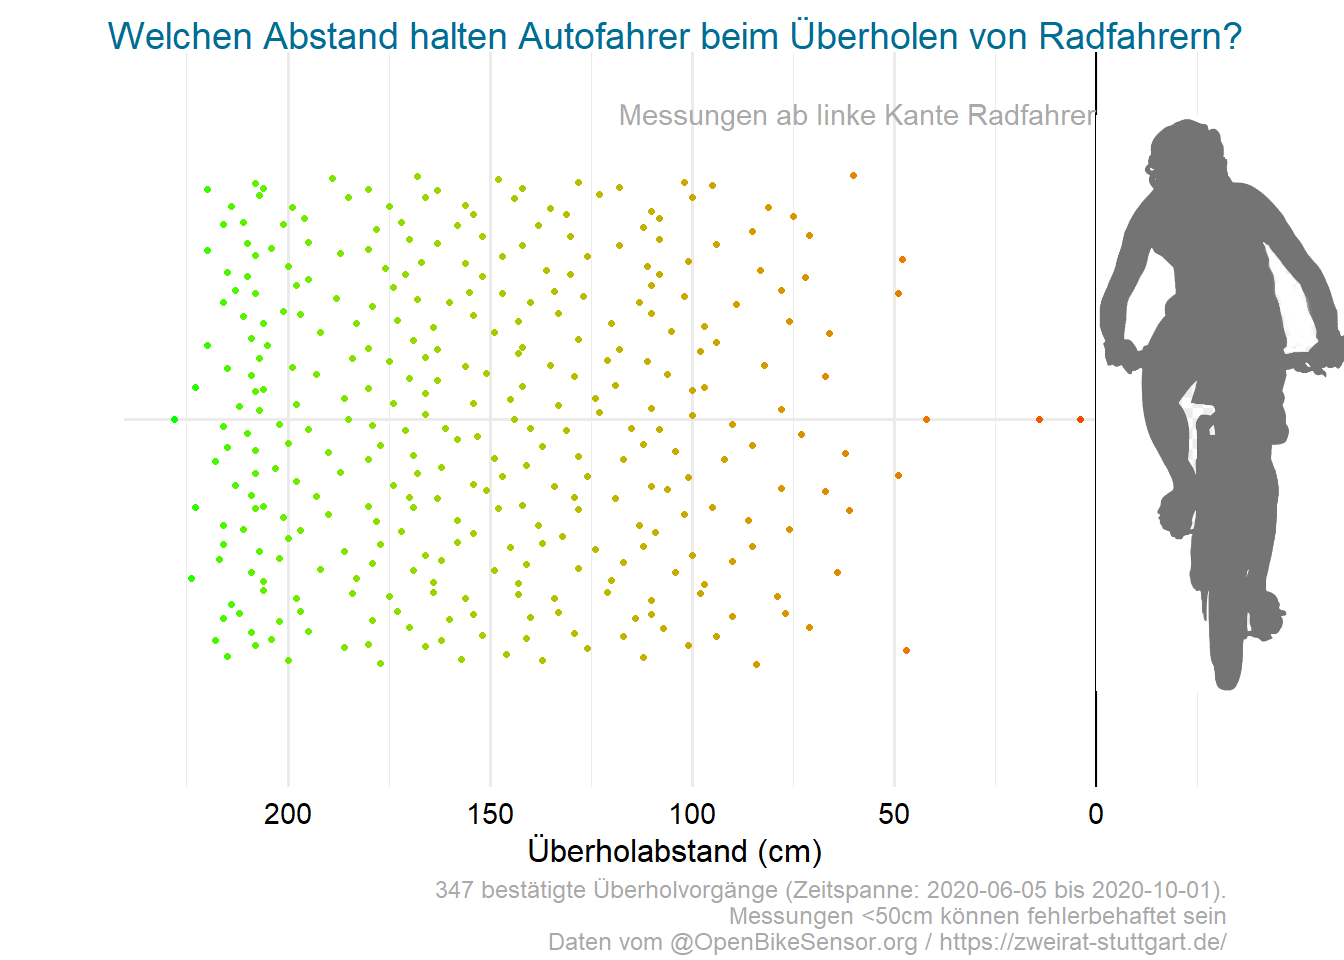 Die Grafik zeigt die per OpenBikeSensor erfassten Messdaten, mit welchen Zentimeter-Abständen Autofahrende die Radfahrenden überholten.